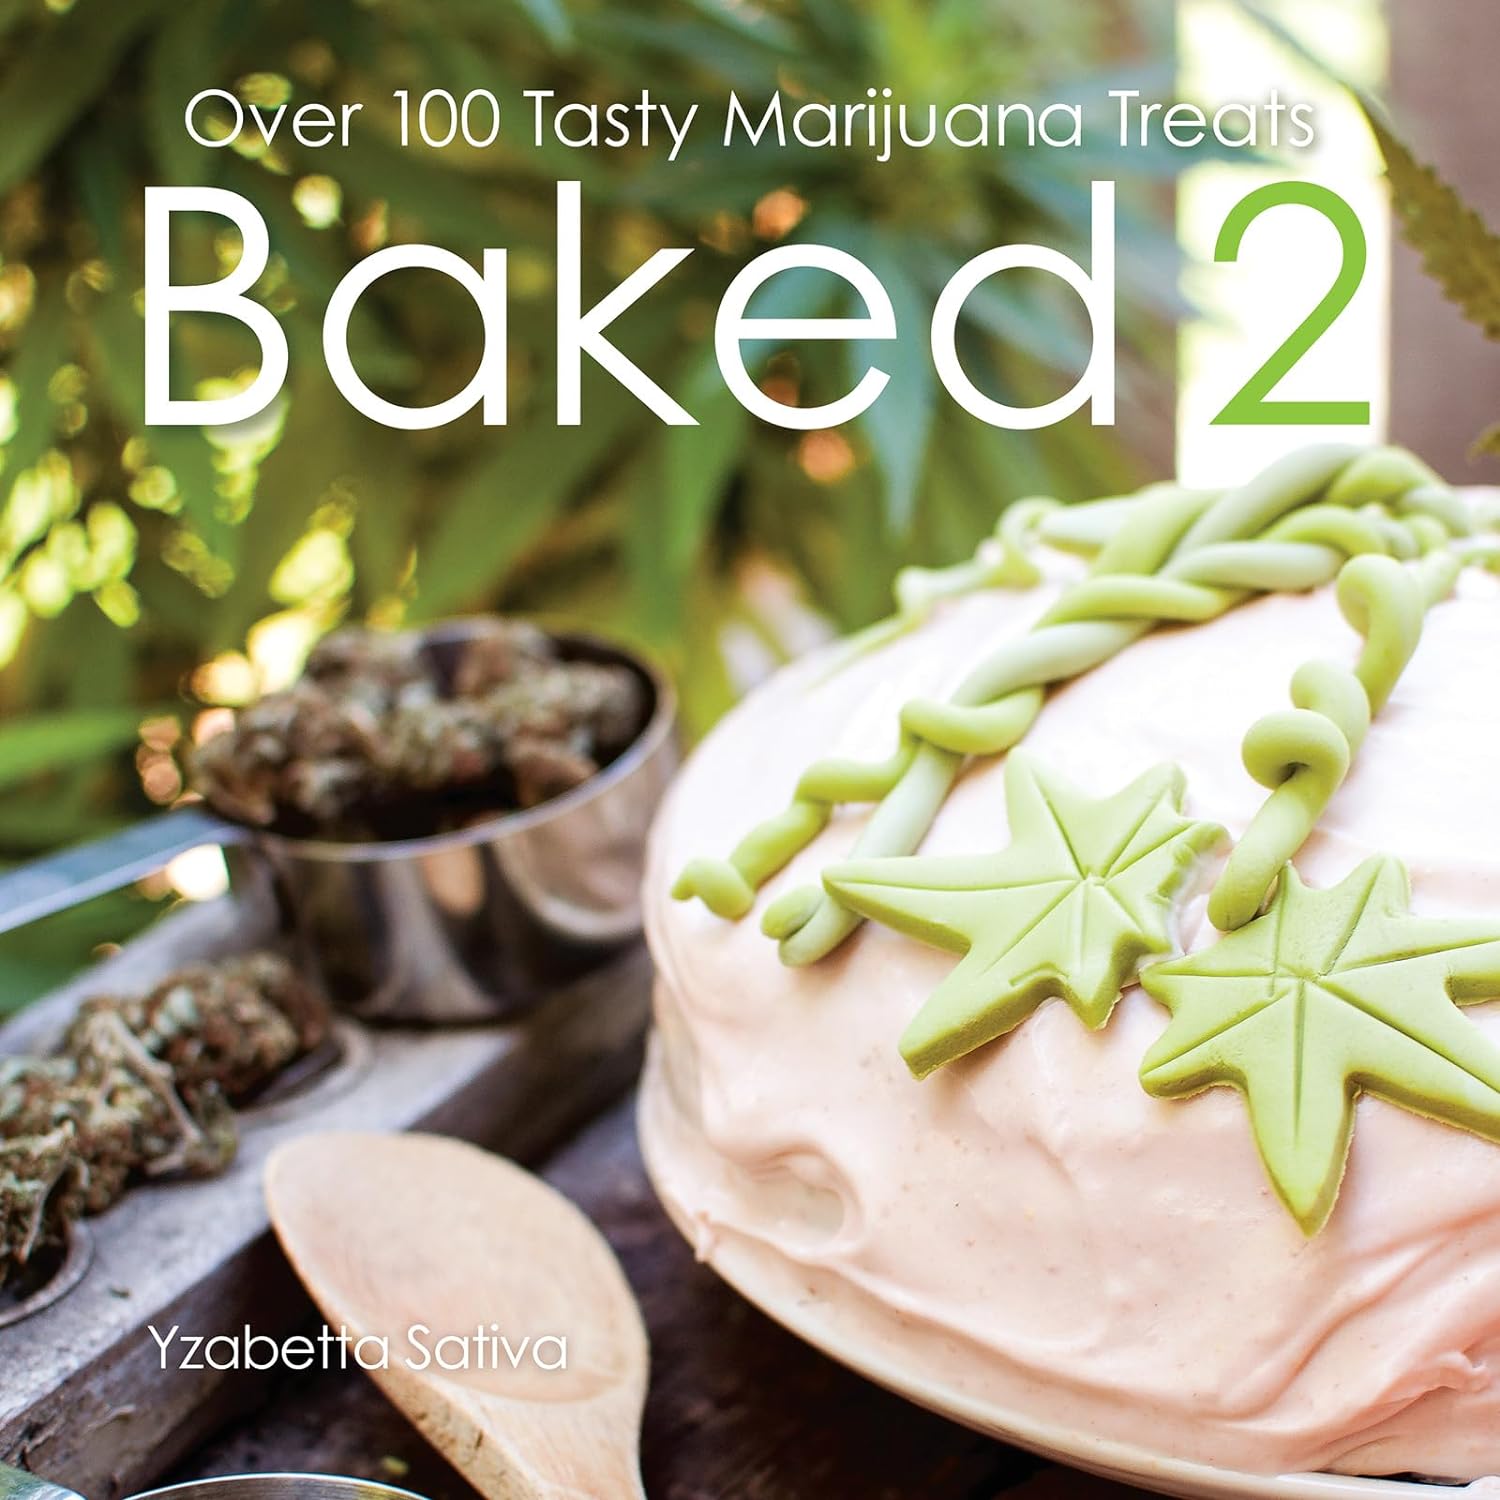 Book - Baked 2: Over 80 Tasty Marijuana Treats-hotRAGS.com